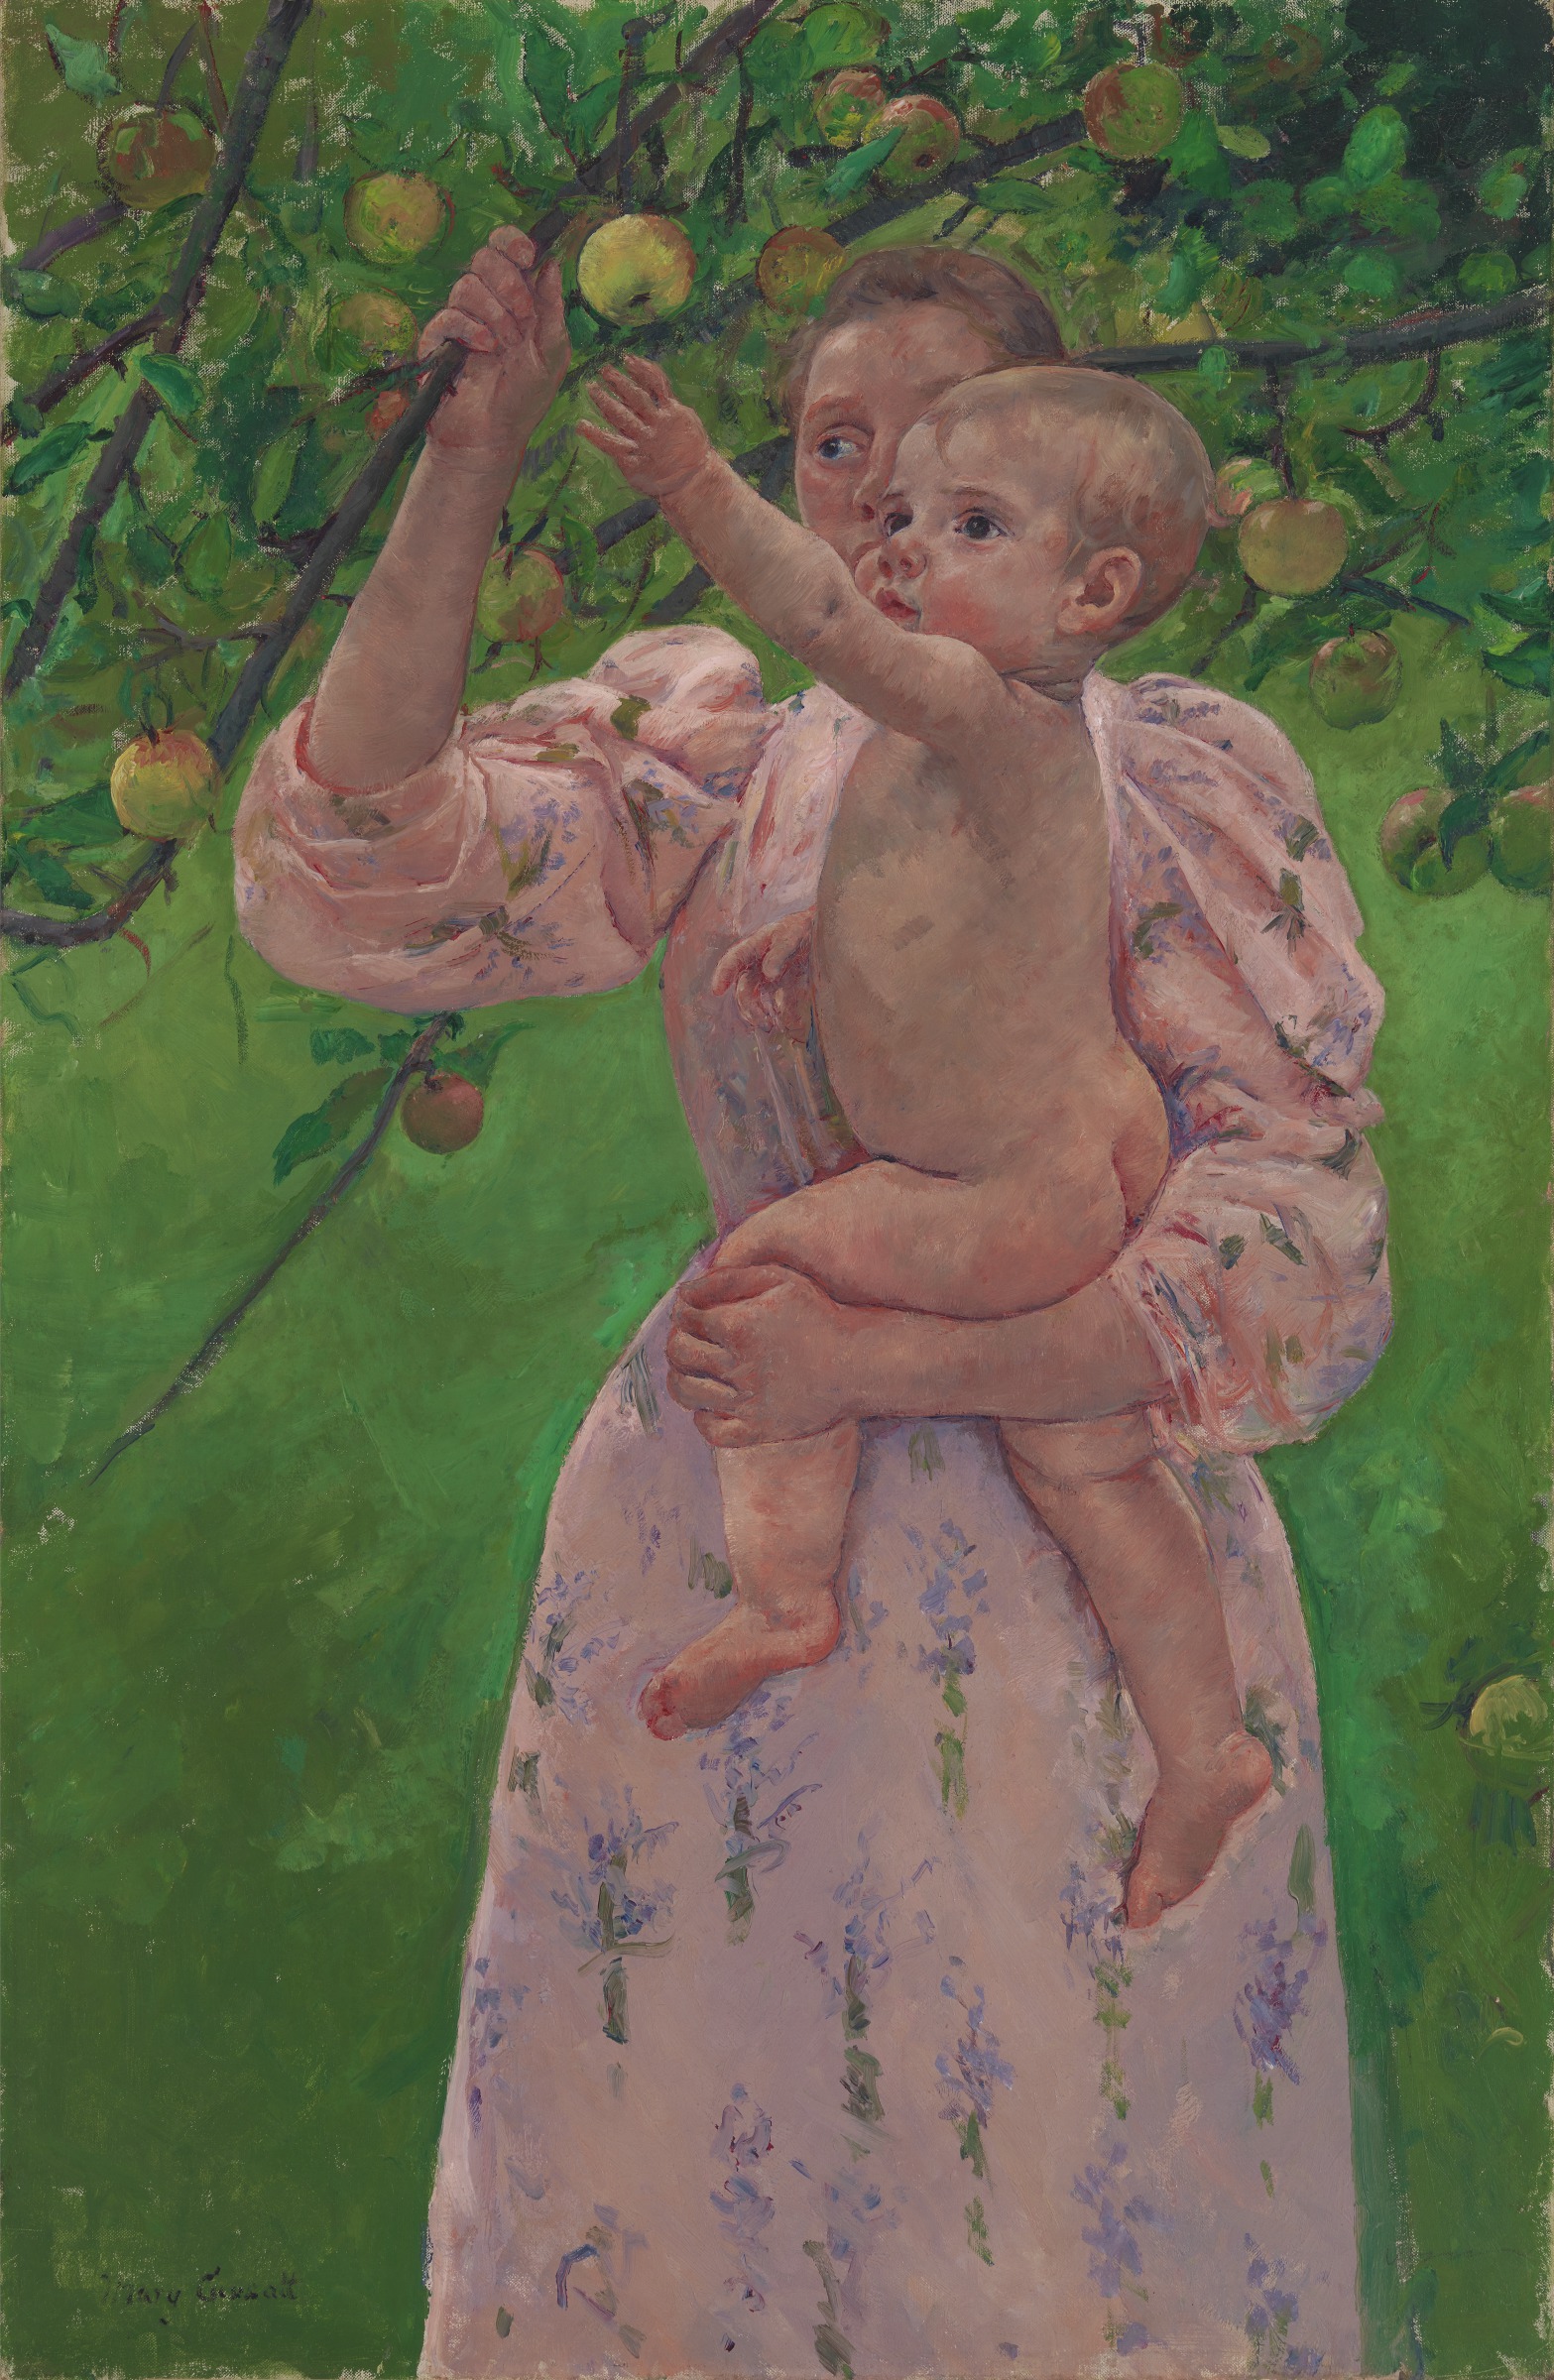 摘水果的孩子 by 玛丽· 卡萨特 - 1893 - 100.33 × 65.41 cm 